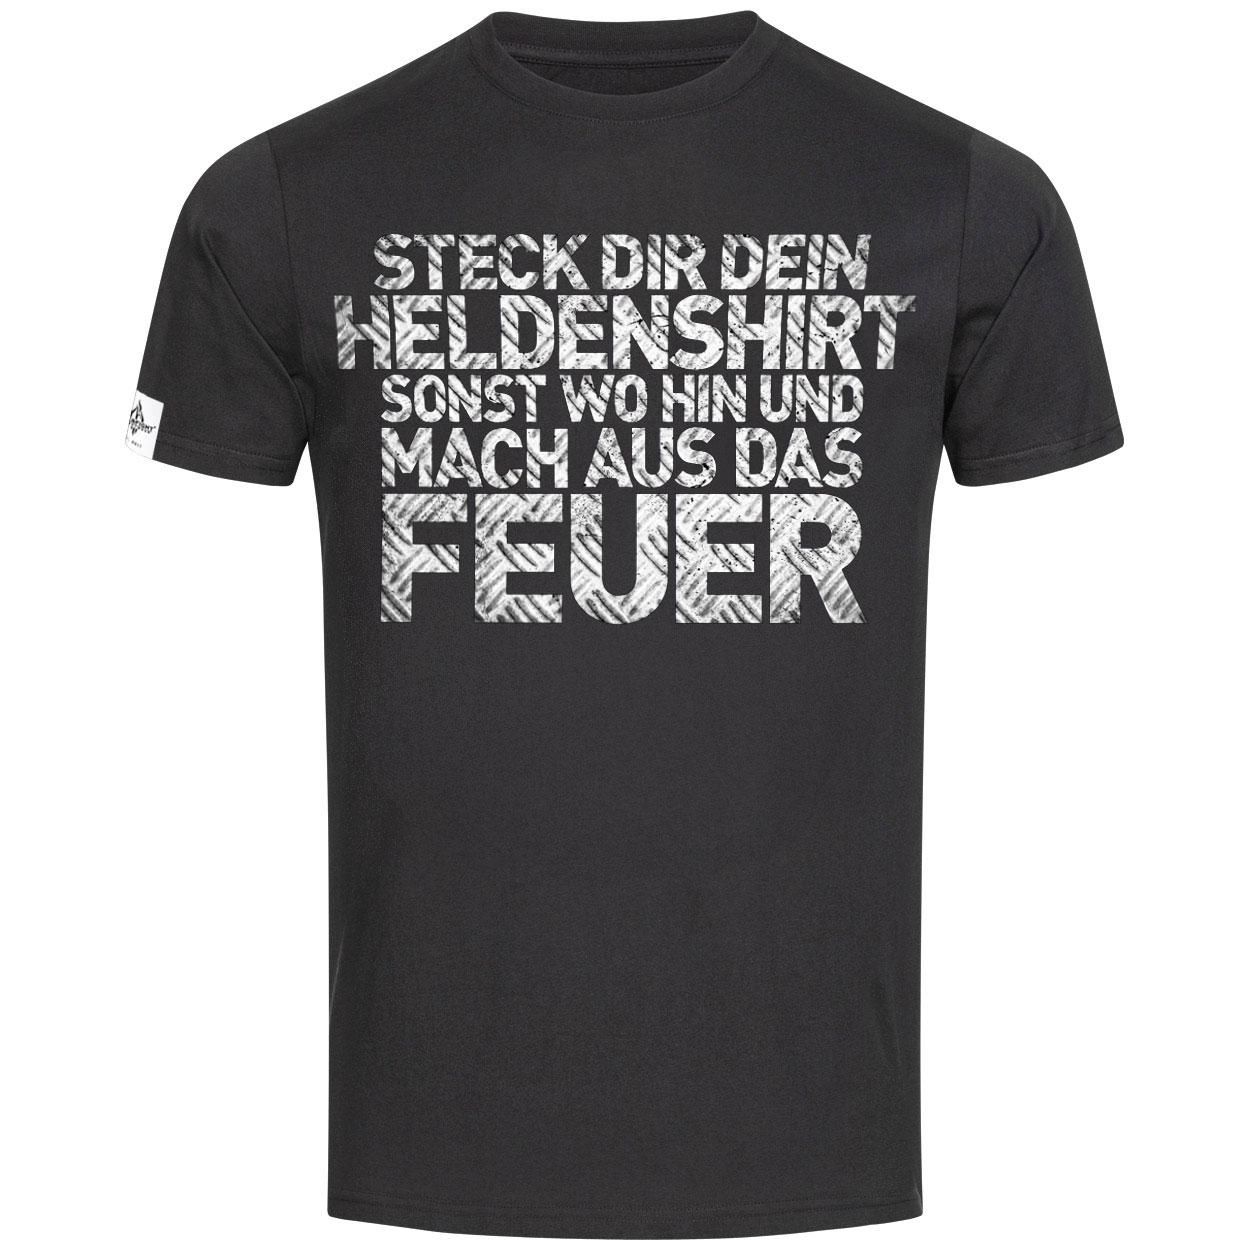 Heldenshirt - Feuerwehrmann T-Shirt